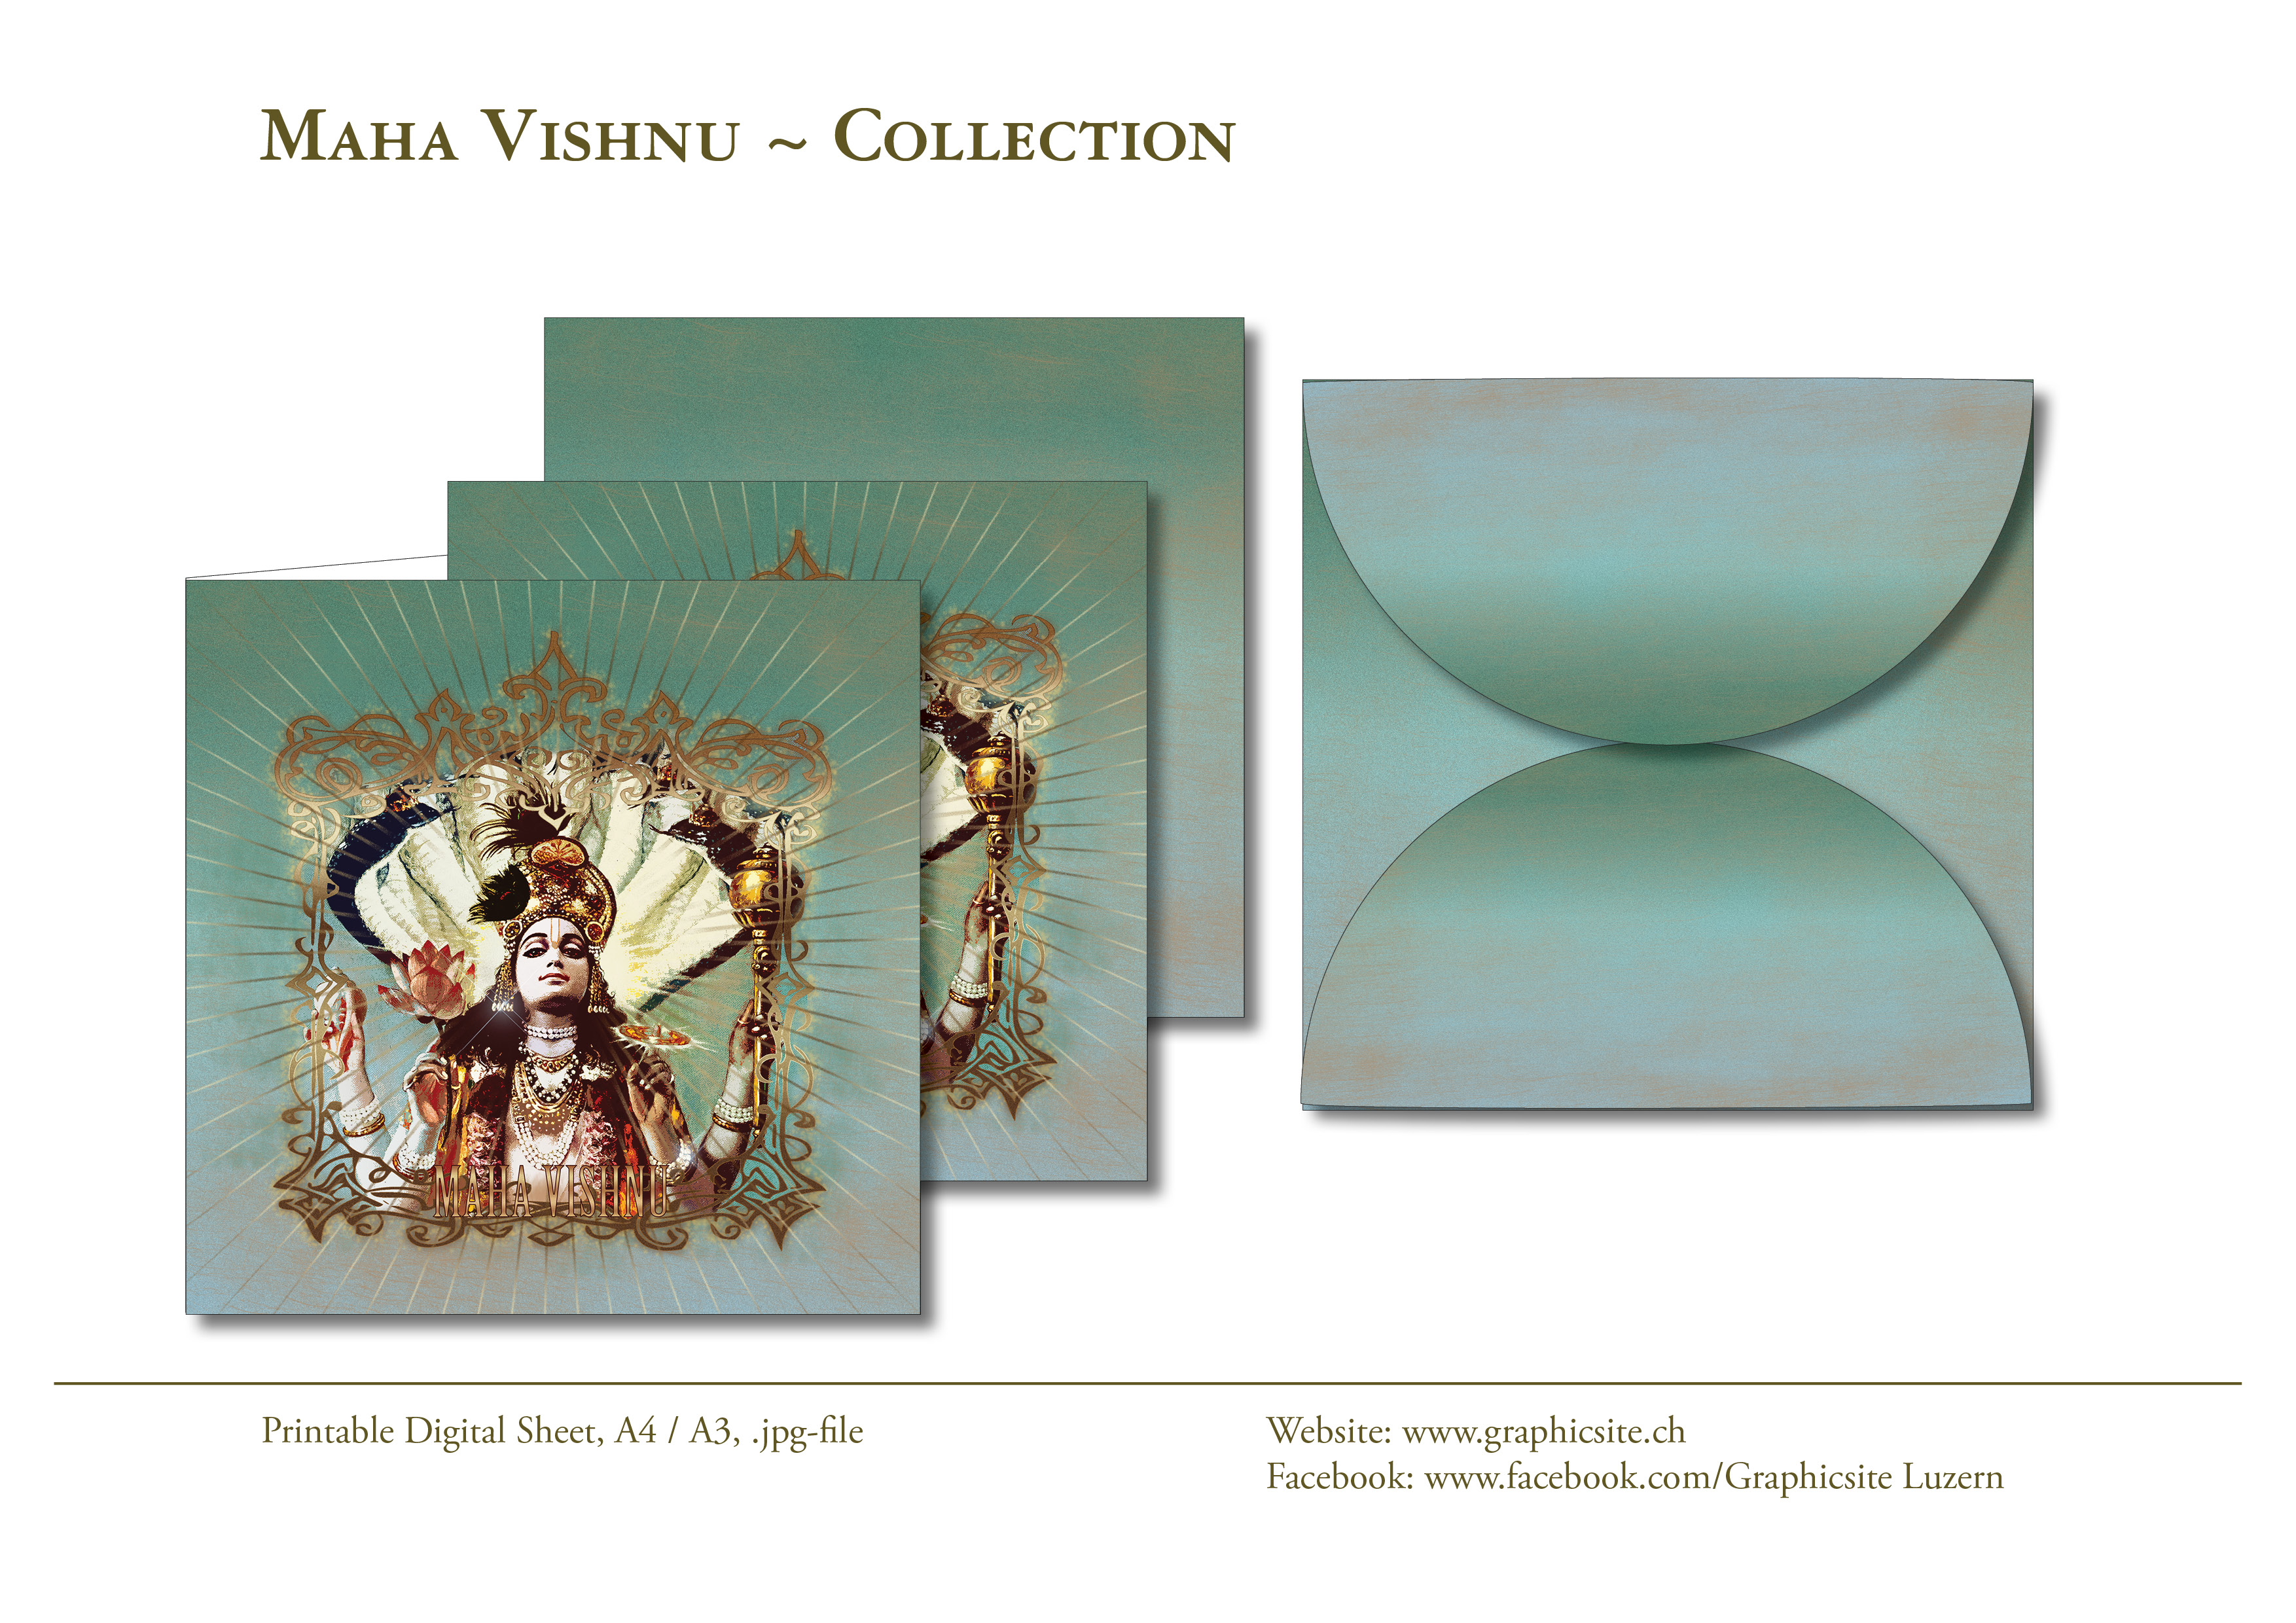 MahaVishnu - Printable Digital Sheets - Kollektion Indien - Maha Vishnu - #karten, #kuvert, #grusskarten, #indien, #yoga, #meditation, 